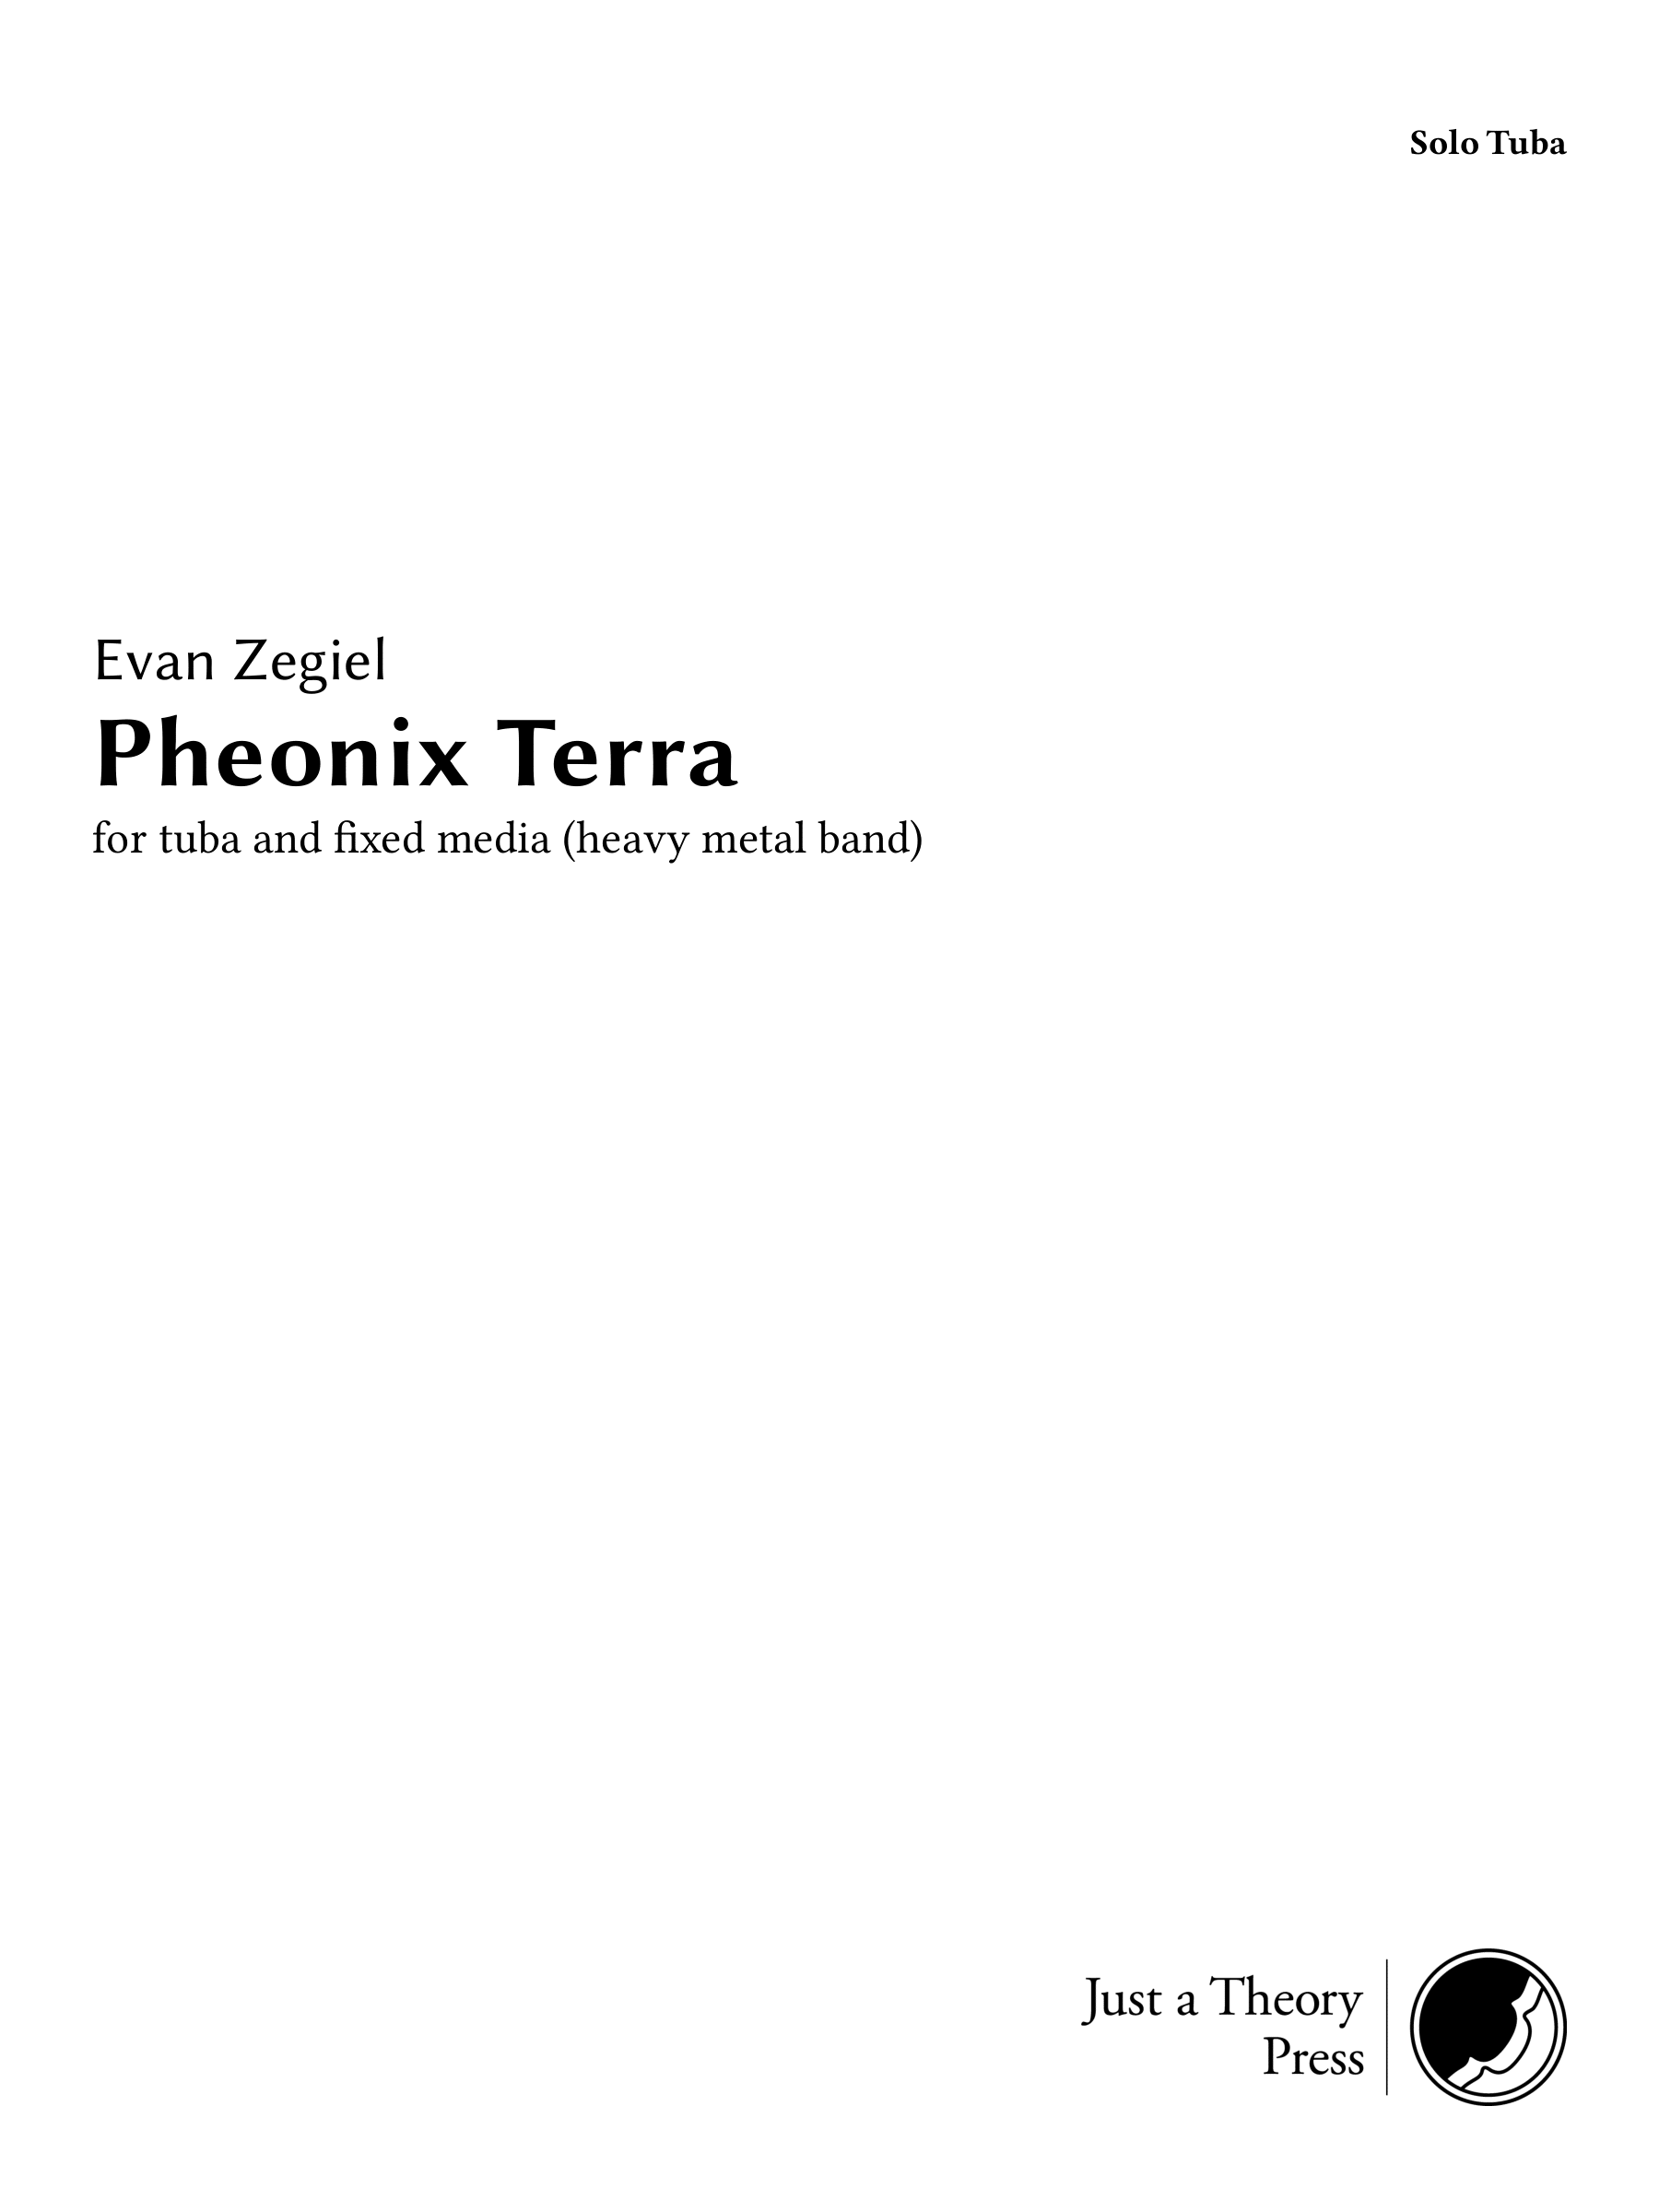 Phoenix Terra